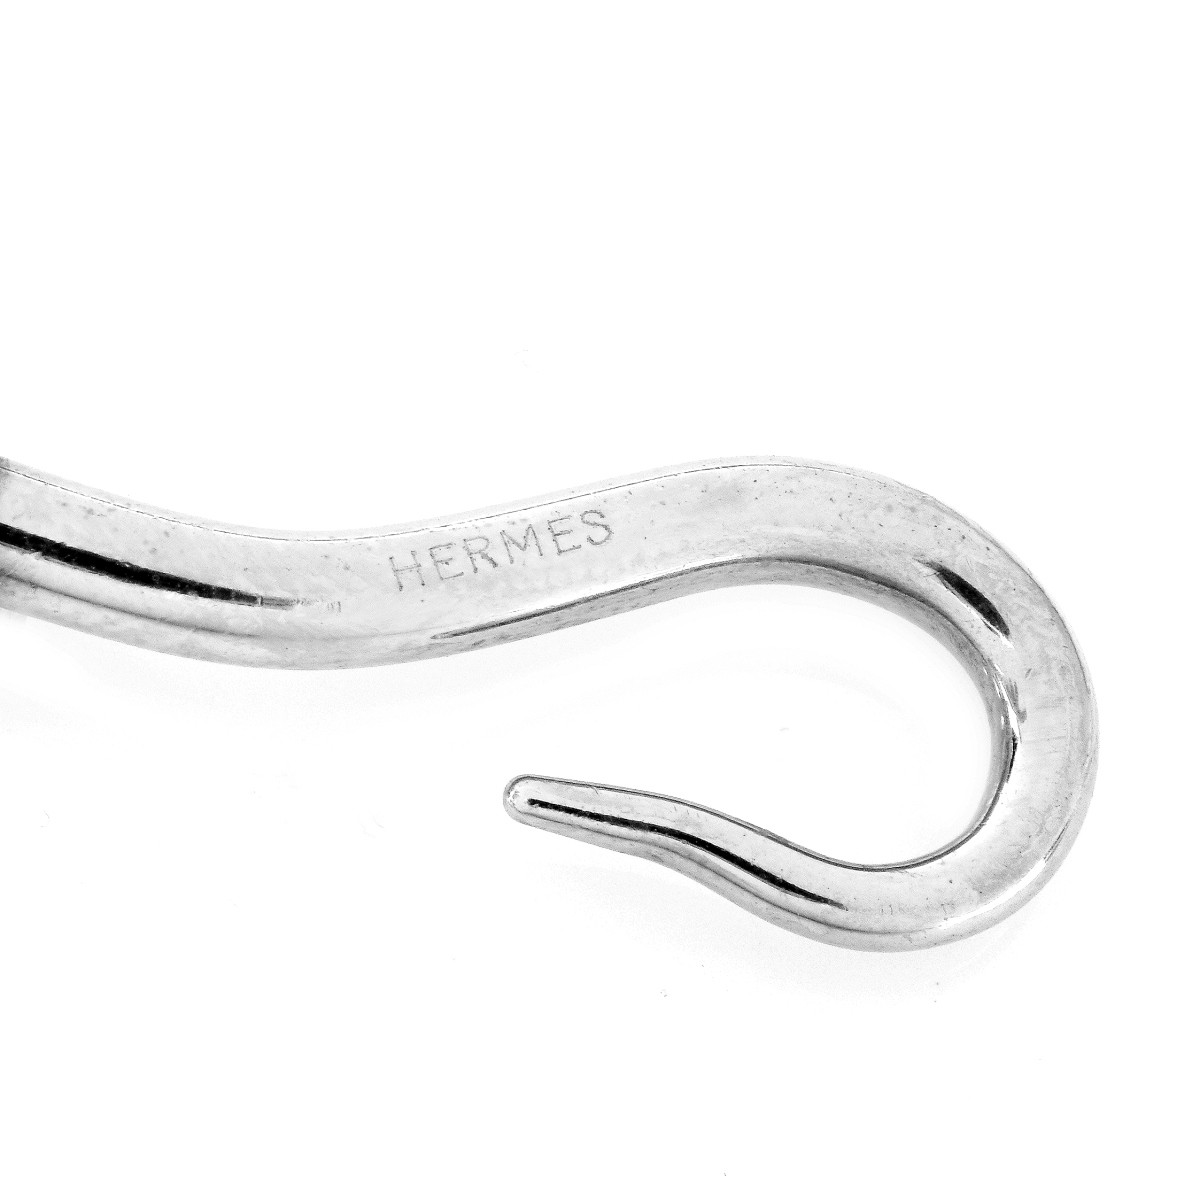 Hermes Black/Grey Leather Double Tour Bracelet